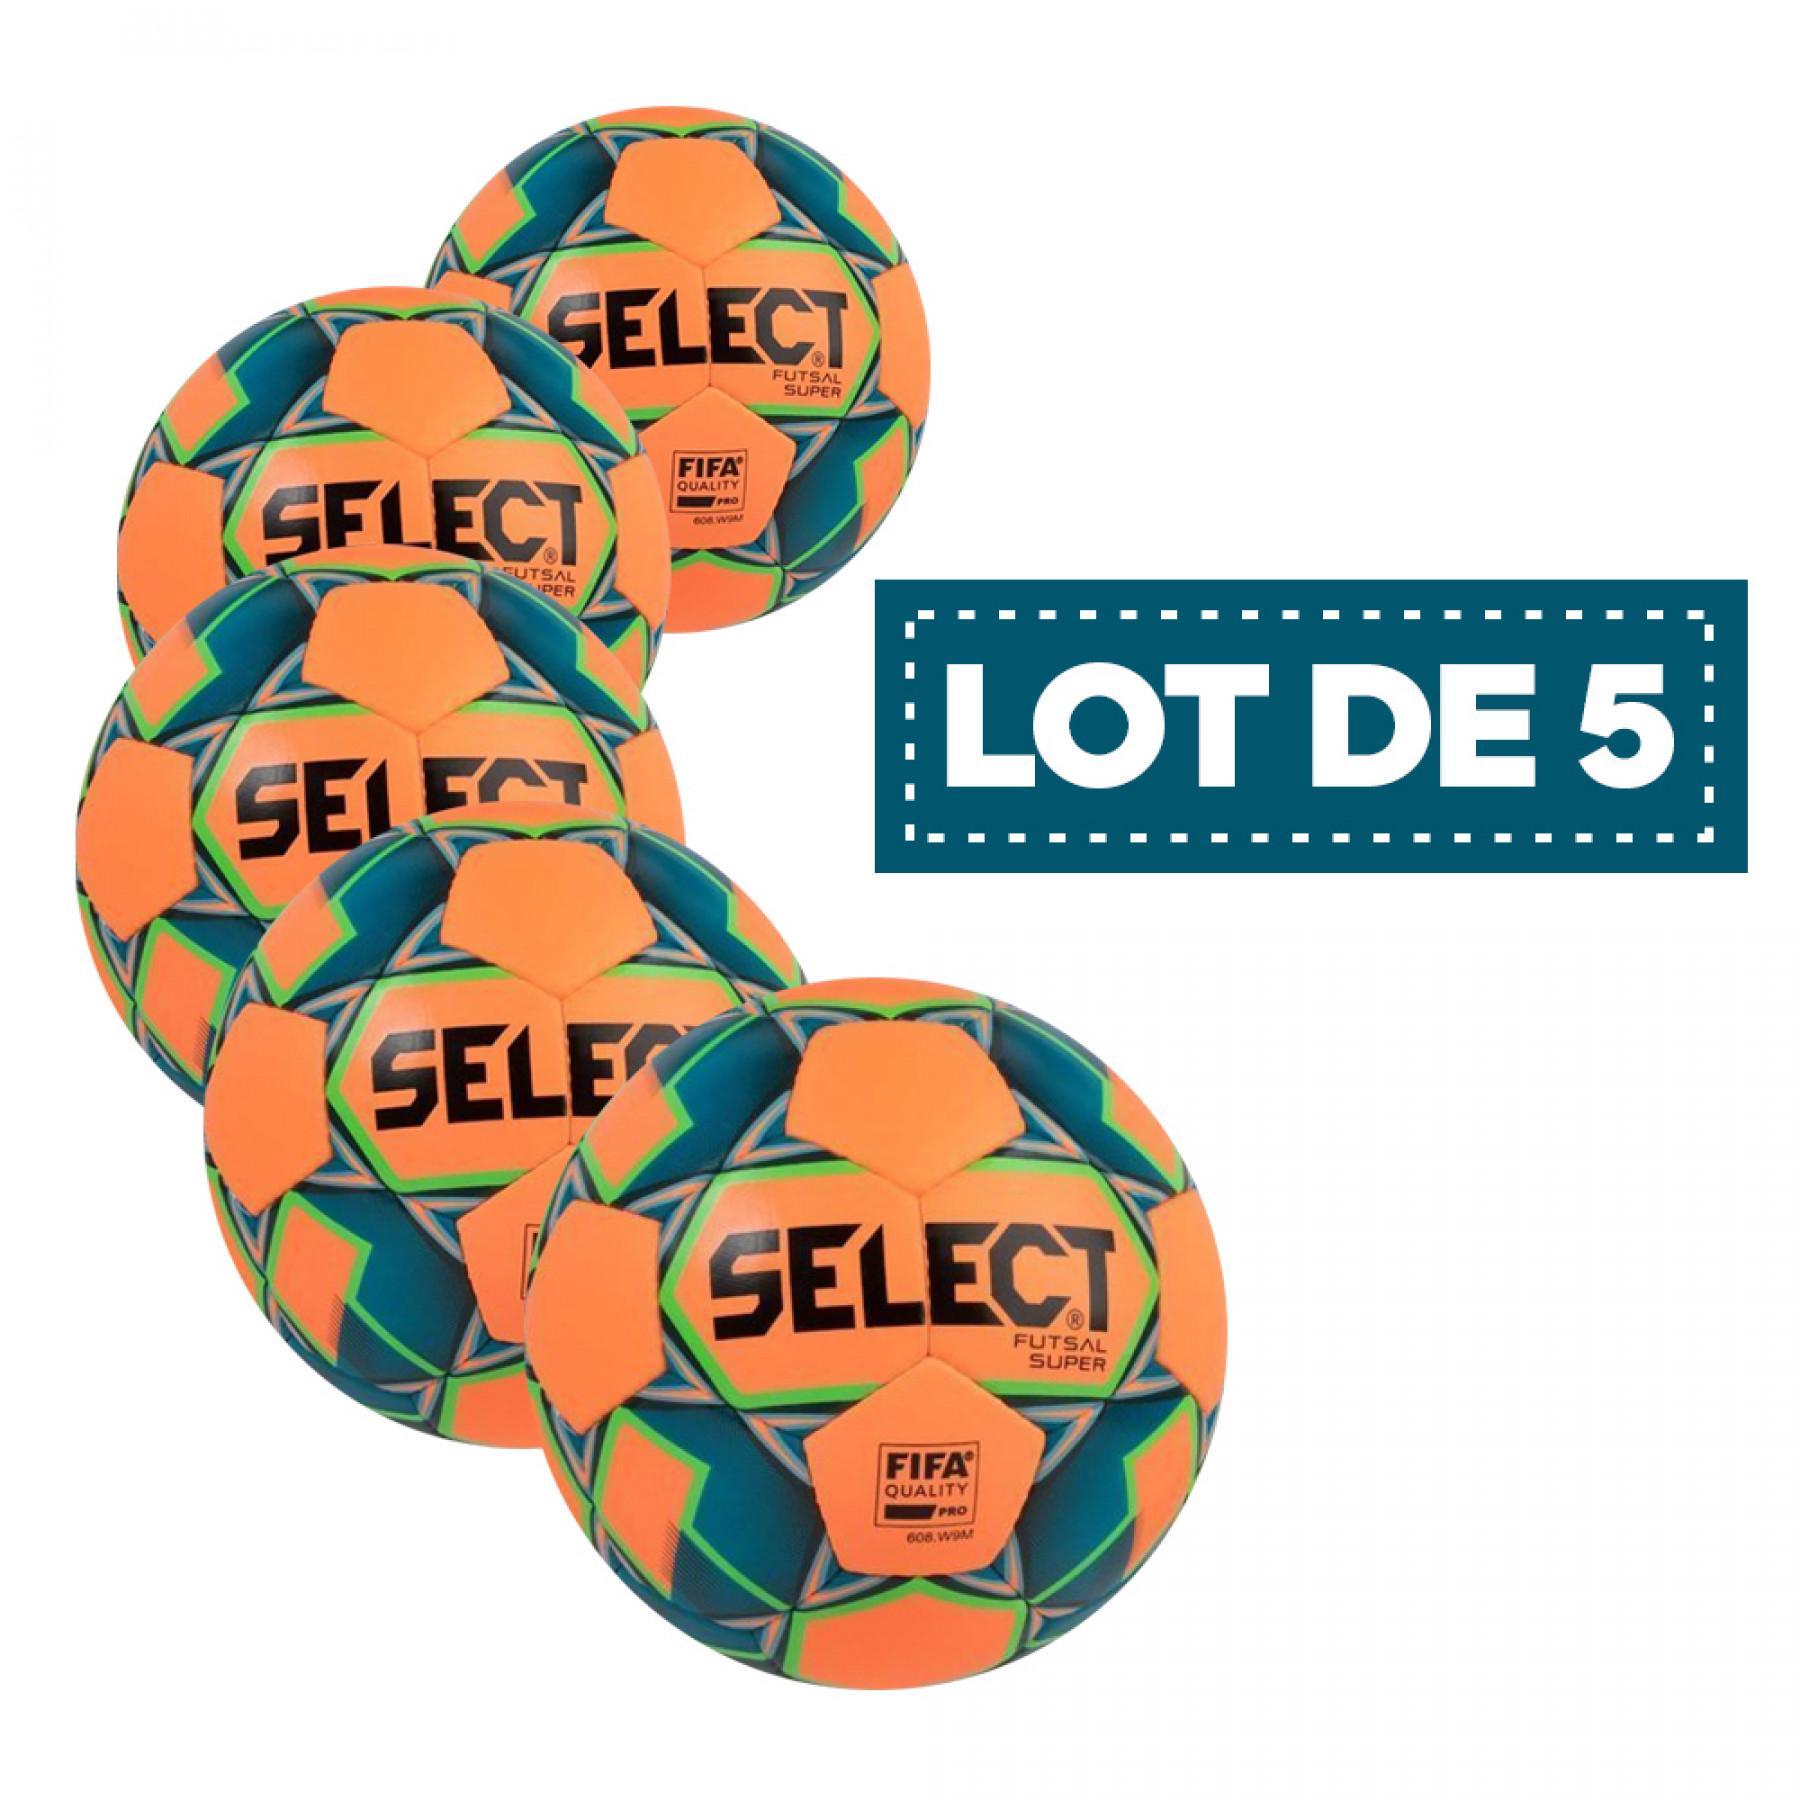 Conjunto de 5 balões Select futsal Super FIFA